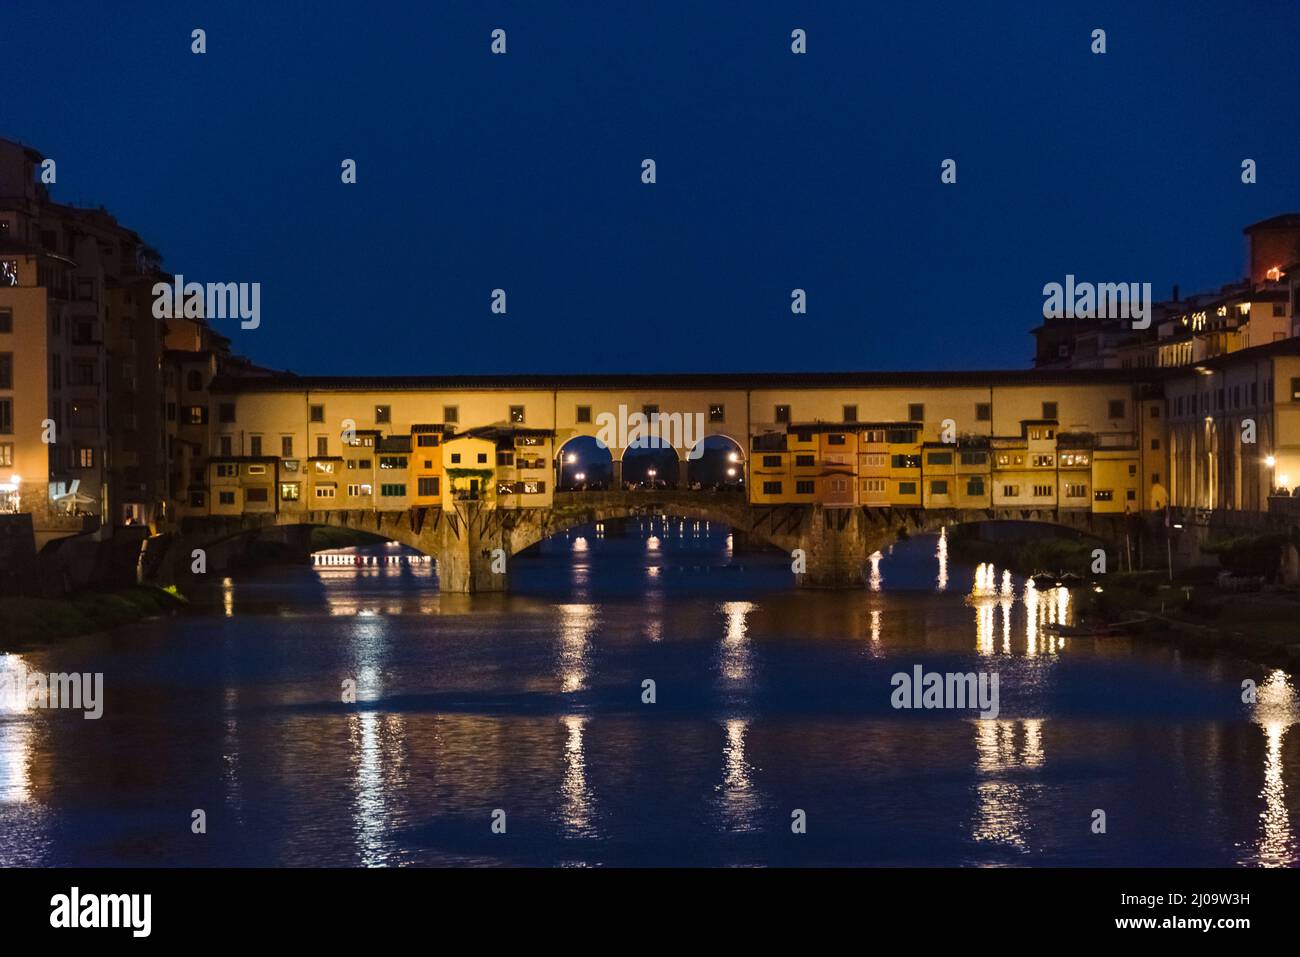 Vista nocturna del Ponte Vecchio, un puente medieval sobre el río Arno, Florencia, Toscana, Italia Foto de stock